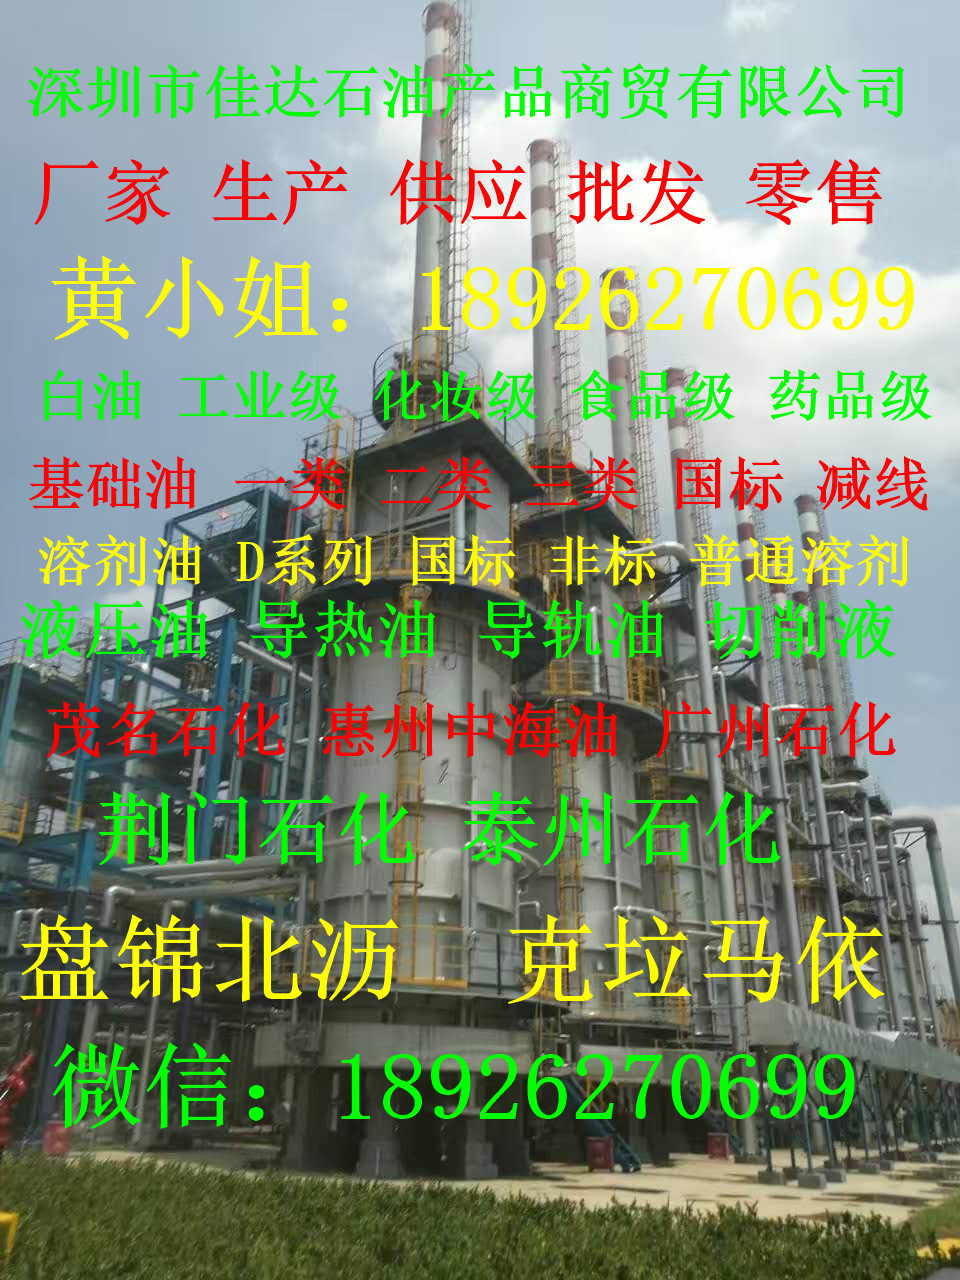 云浮市郁南县厂家生产3号工业级白油茂名石化供应批发零售18926270699